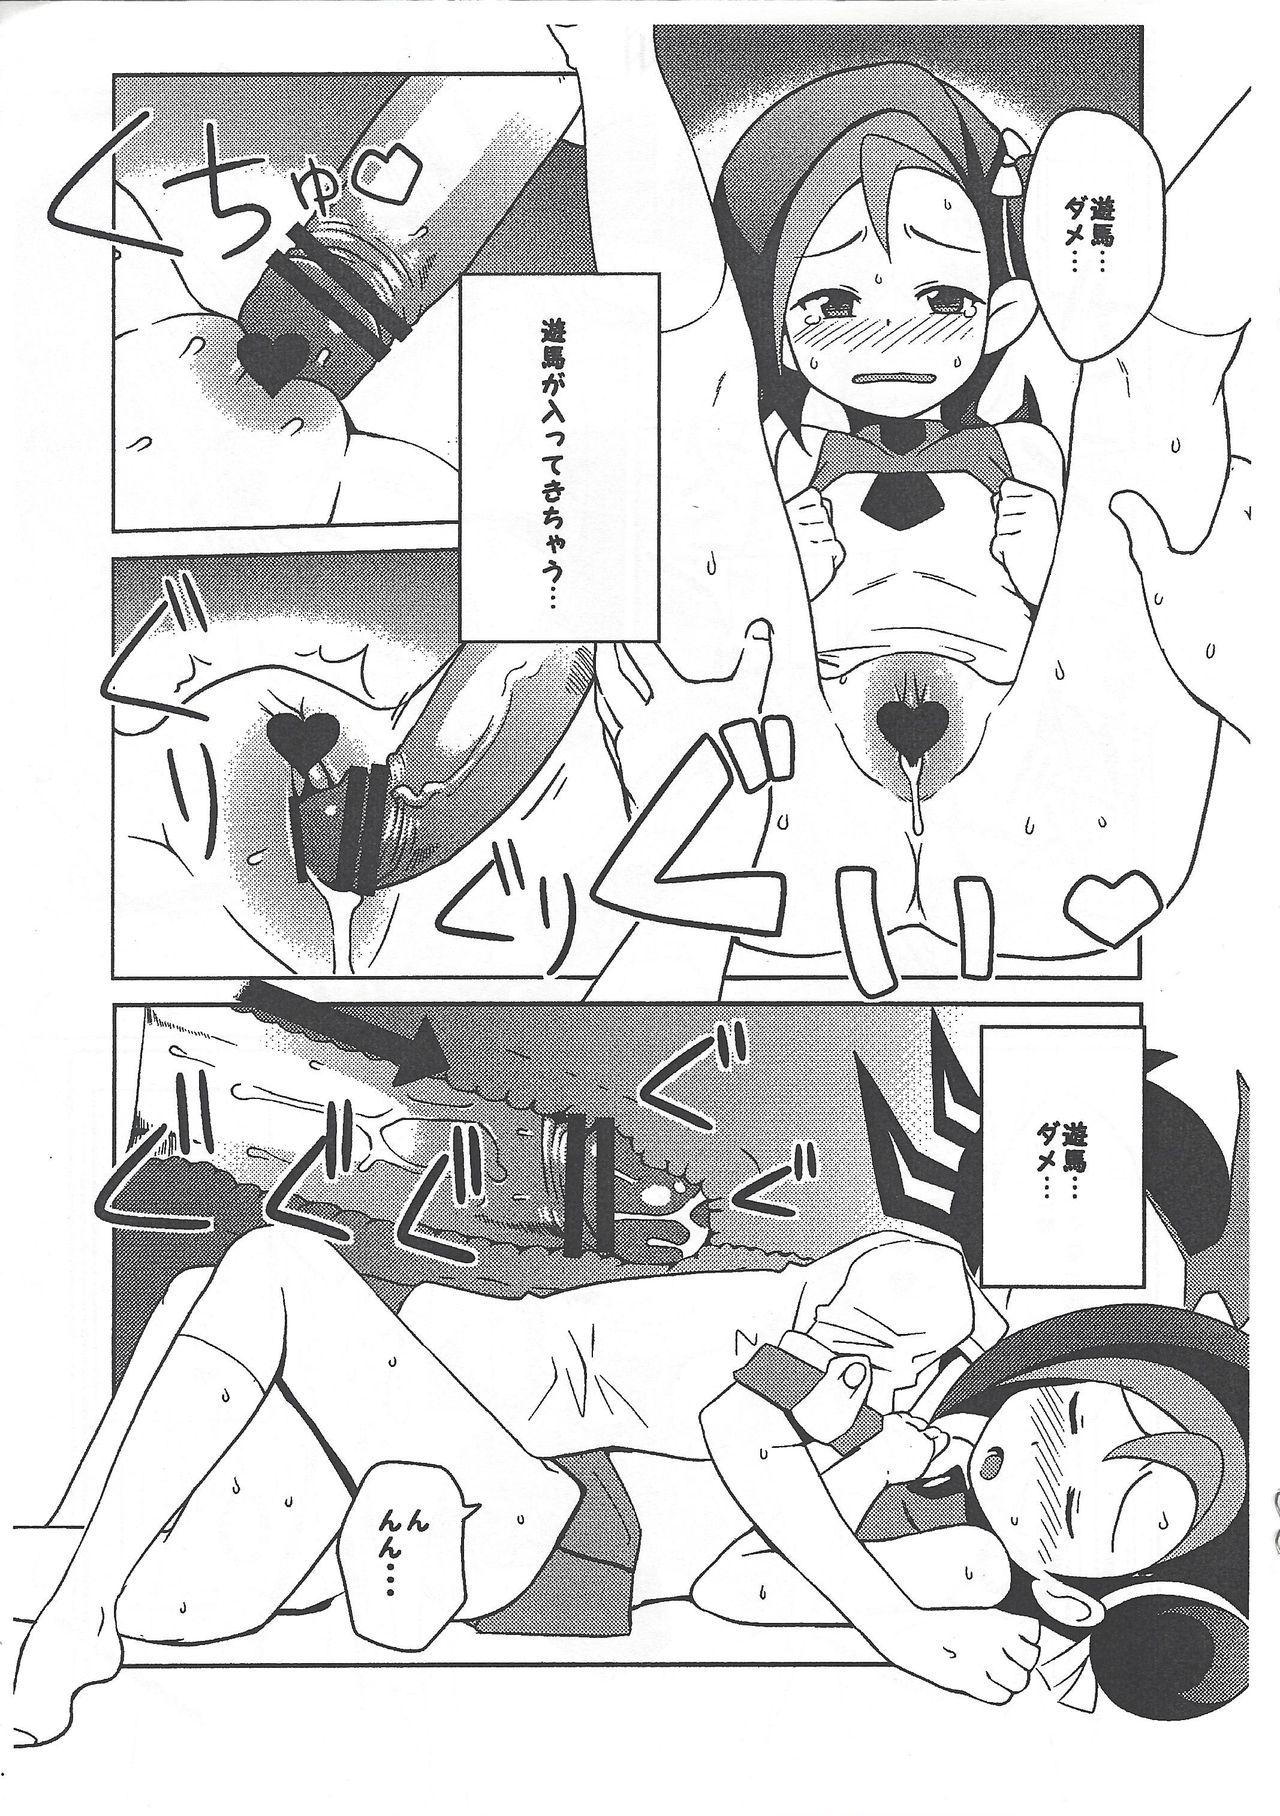 Gilf (Puniket 23) [Funi Funi Lab (Tamagoro)] Yu-Gi-Oh ZEXAL Kotori-chan Book (Tentative) (Yu-Gi-Oh! ZEXAL) - Yu gi oh zexal Rebolando - Page 9